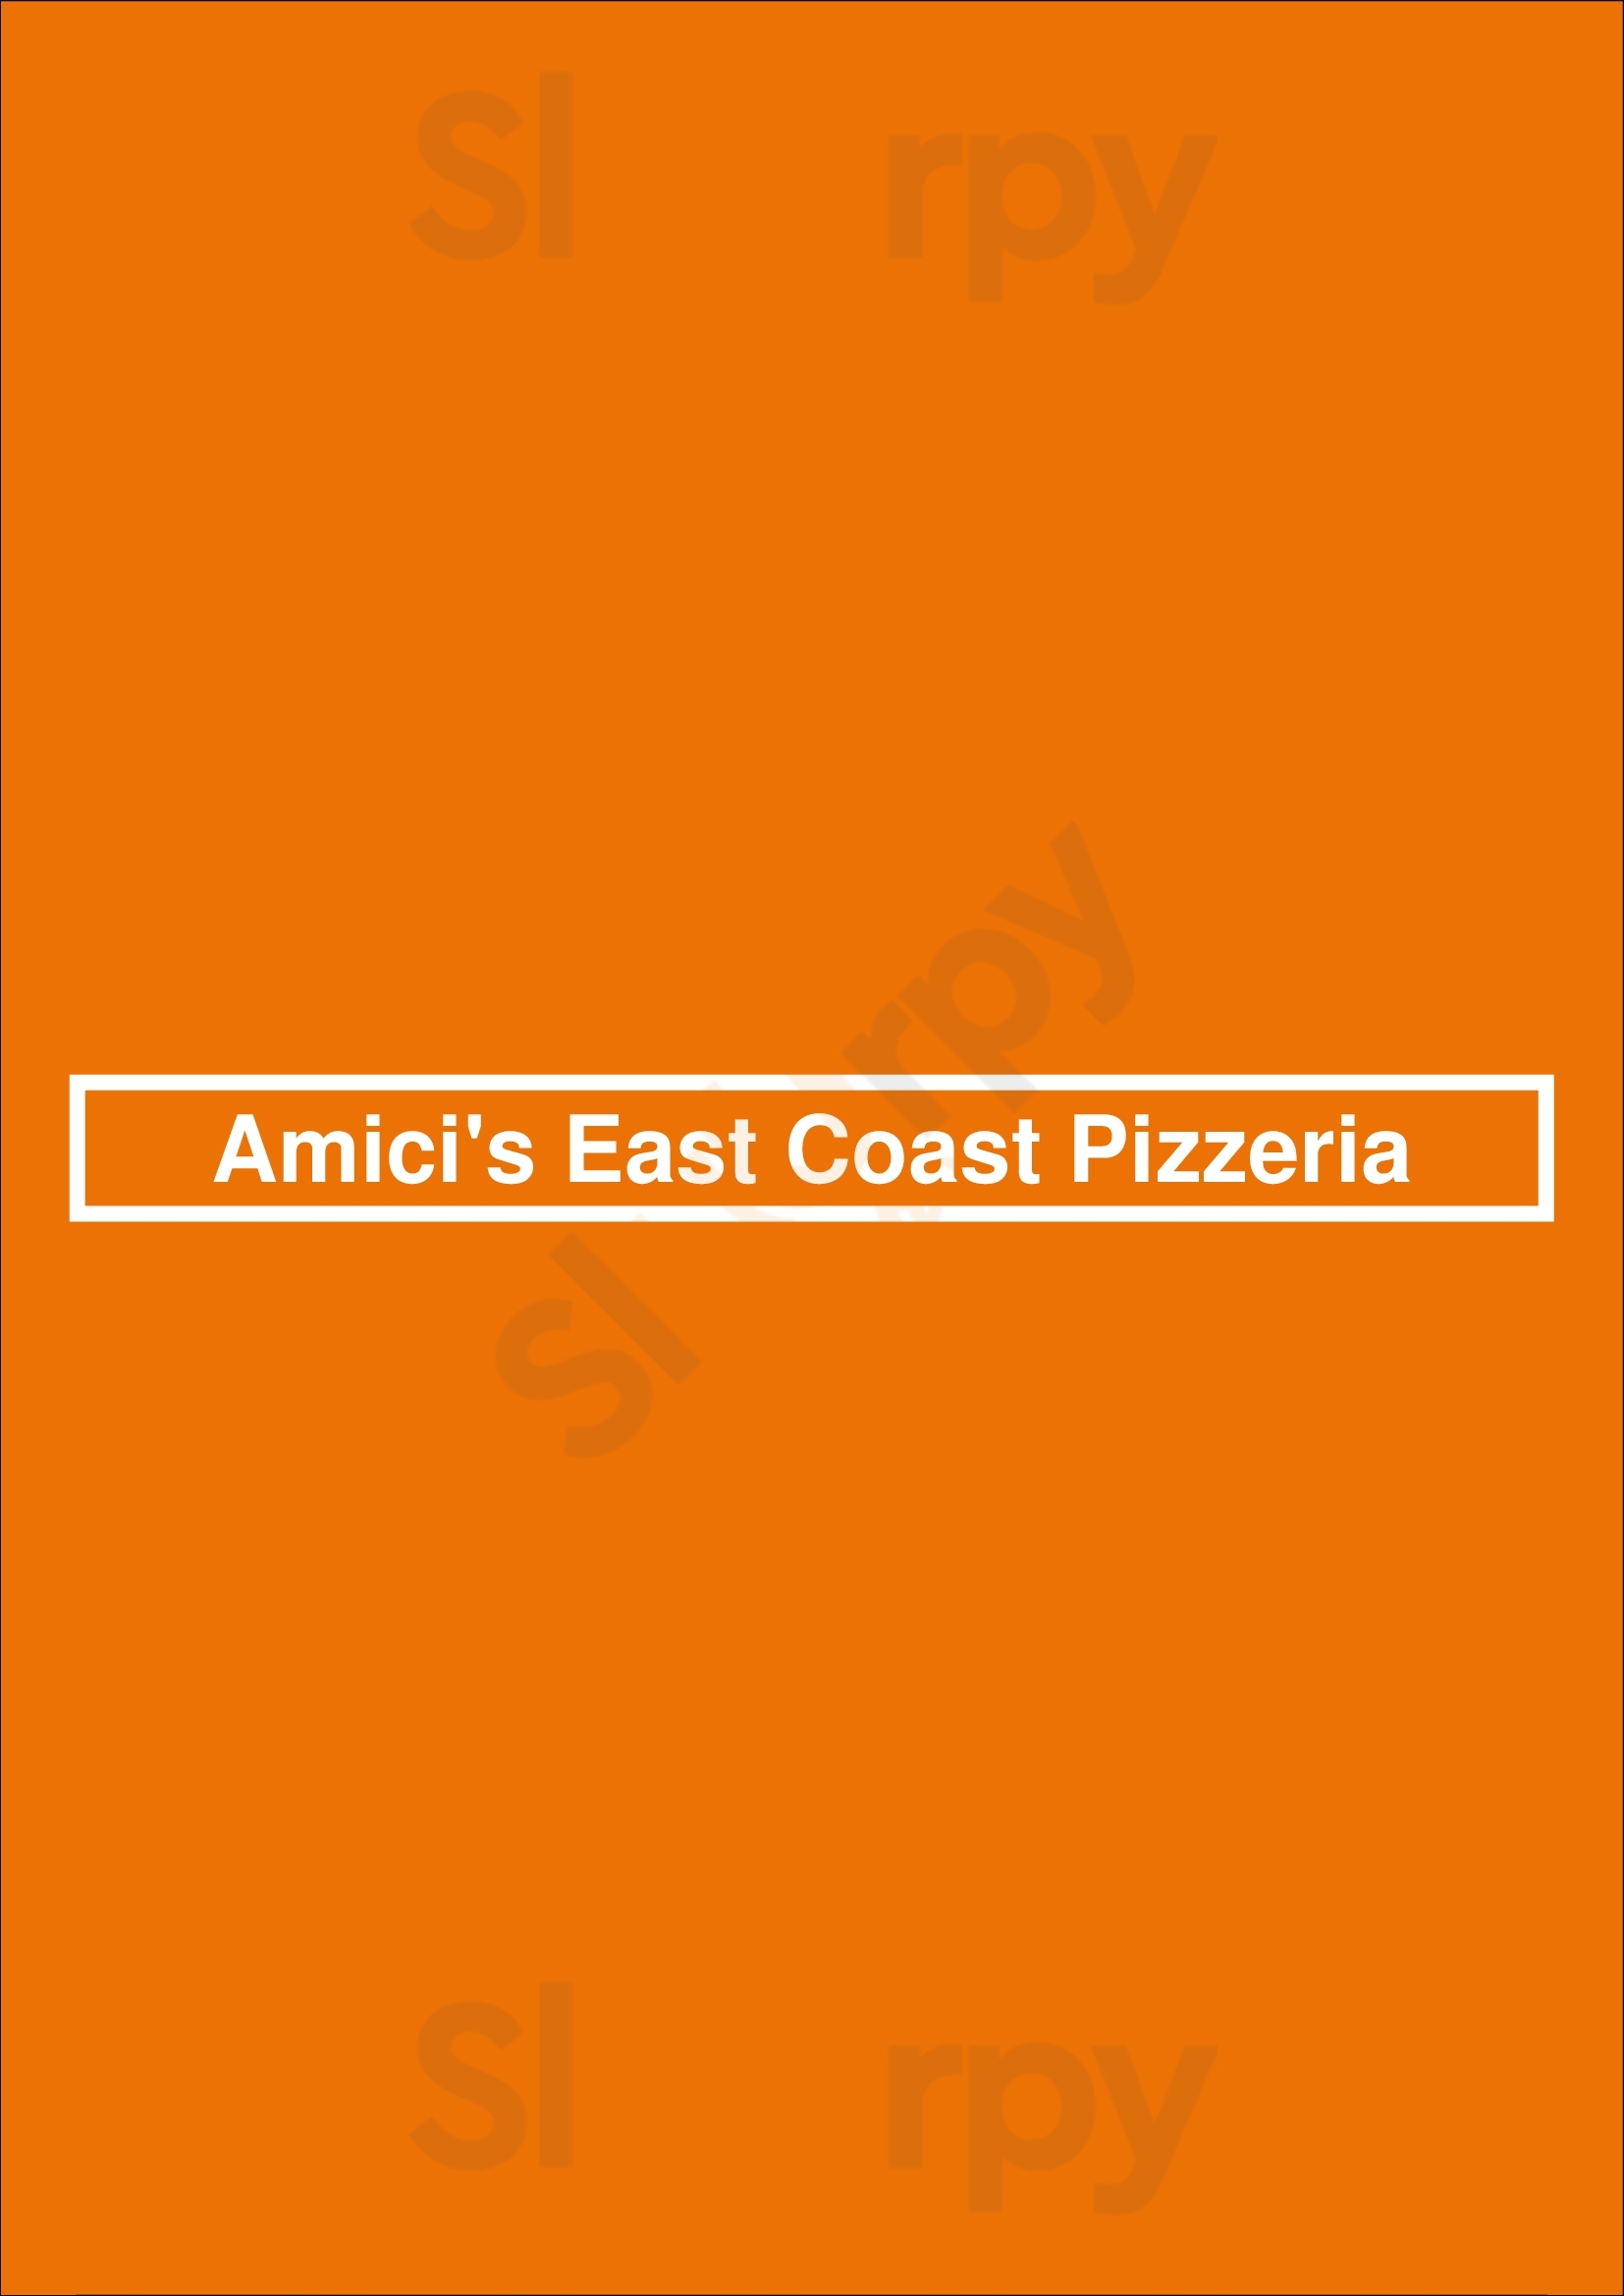 Amici's East Coast Pizzeria Danville Menu - 1